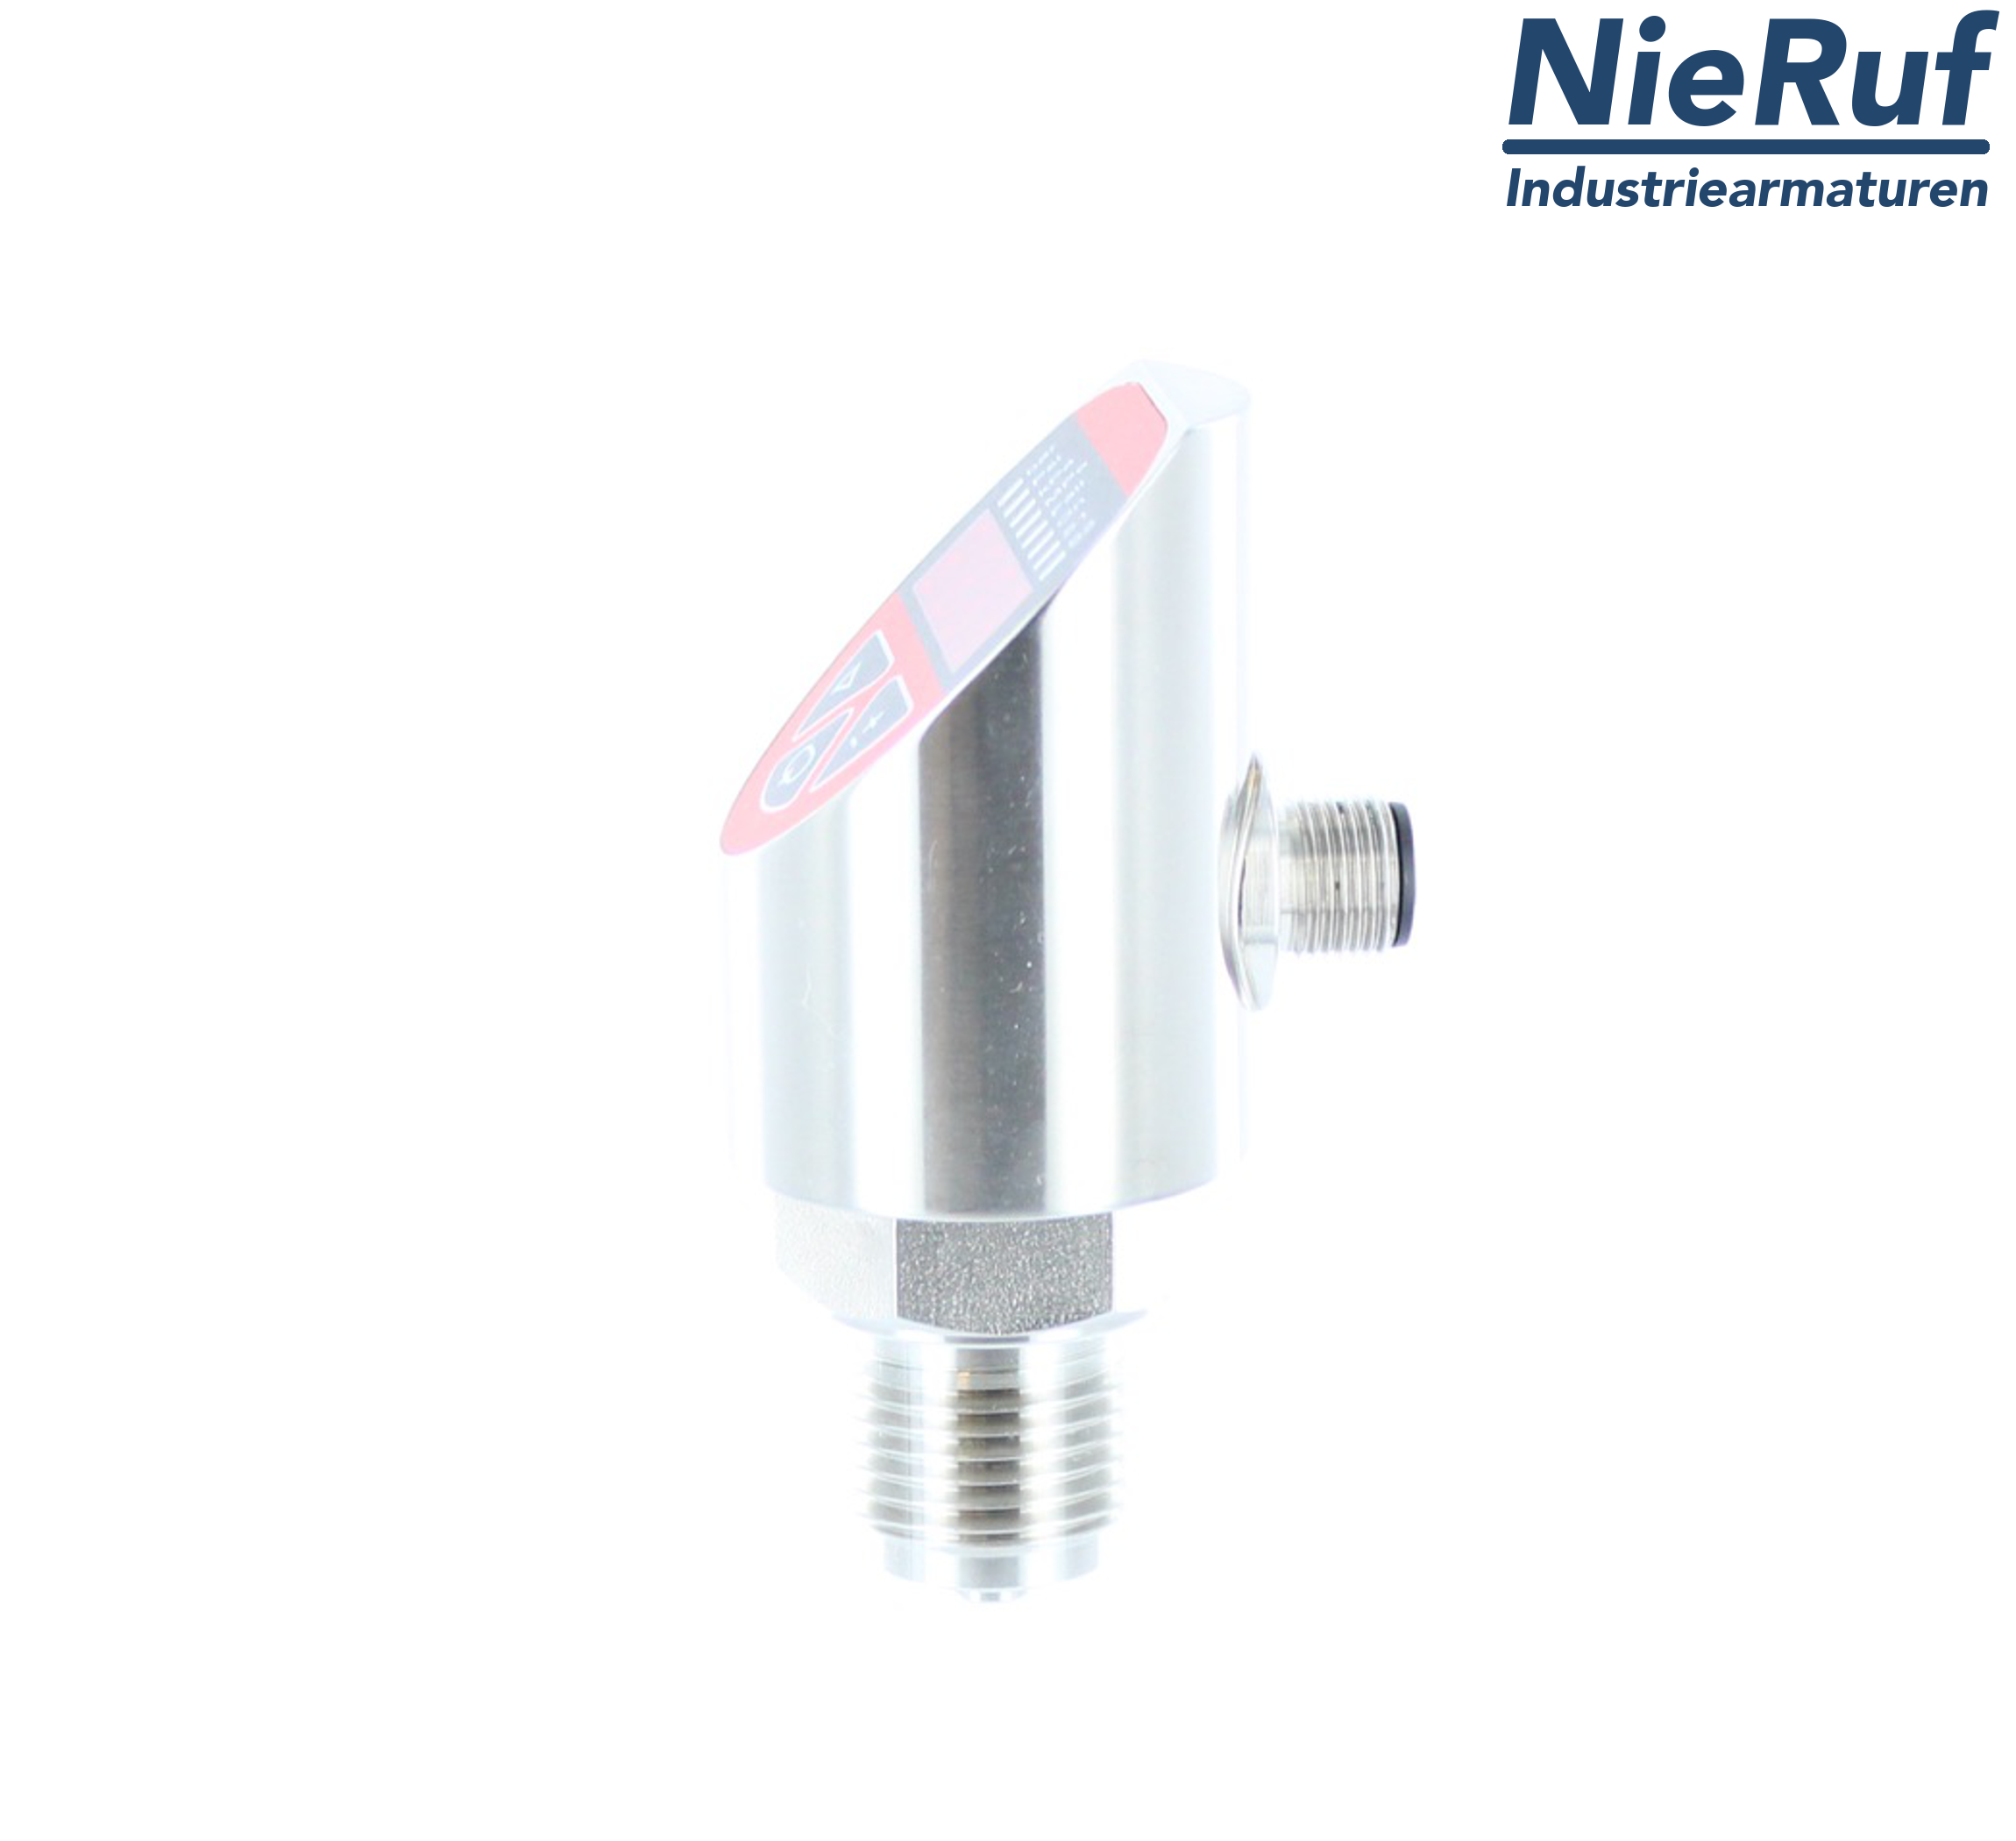 digital pressure sensor G 1/2" B IB 5-wire: 2xPNP, 1x4 - 20mA FPM 0,0 - 10,0 bar